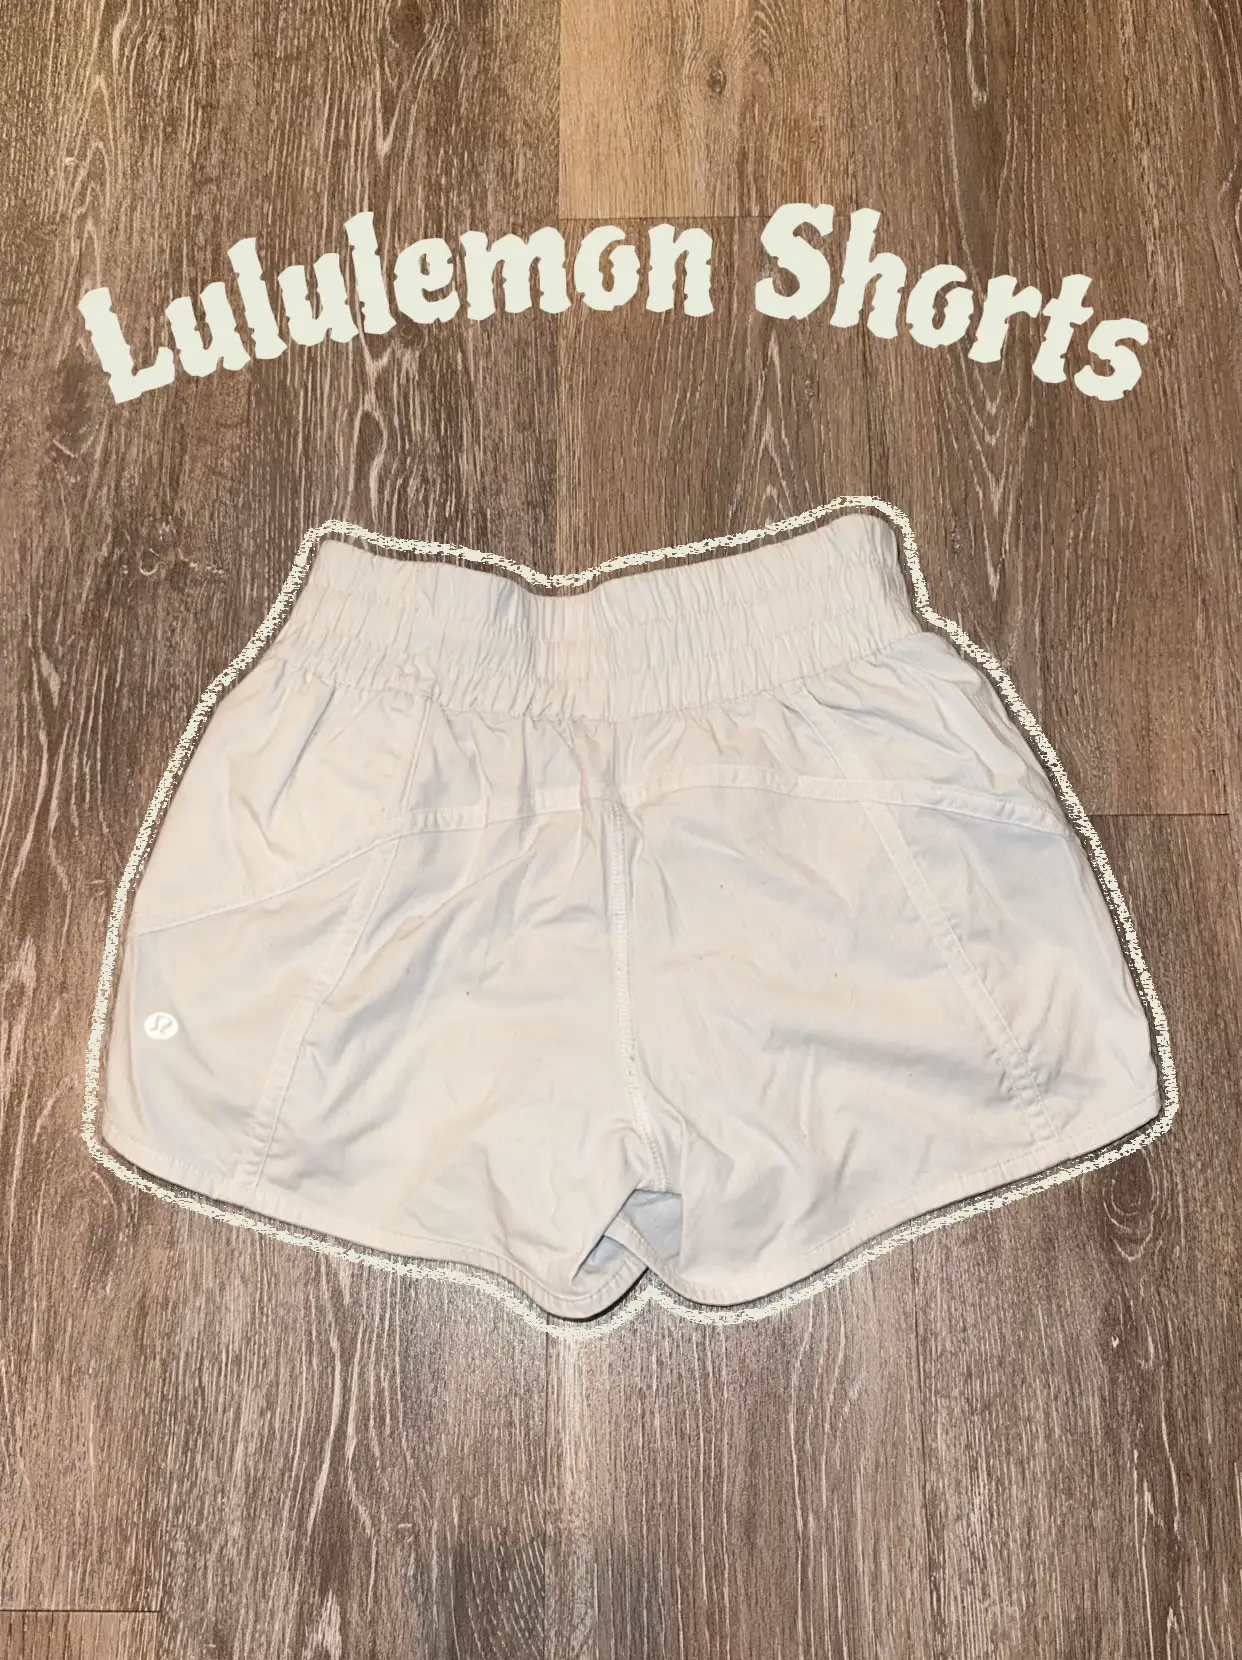 Lululemon Shorts Dupe Dhgate Scam